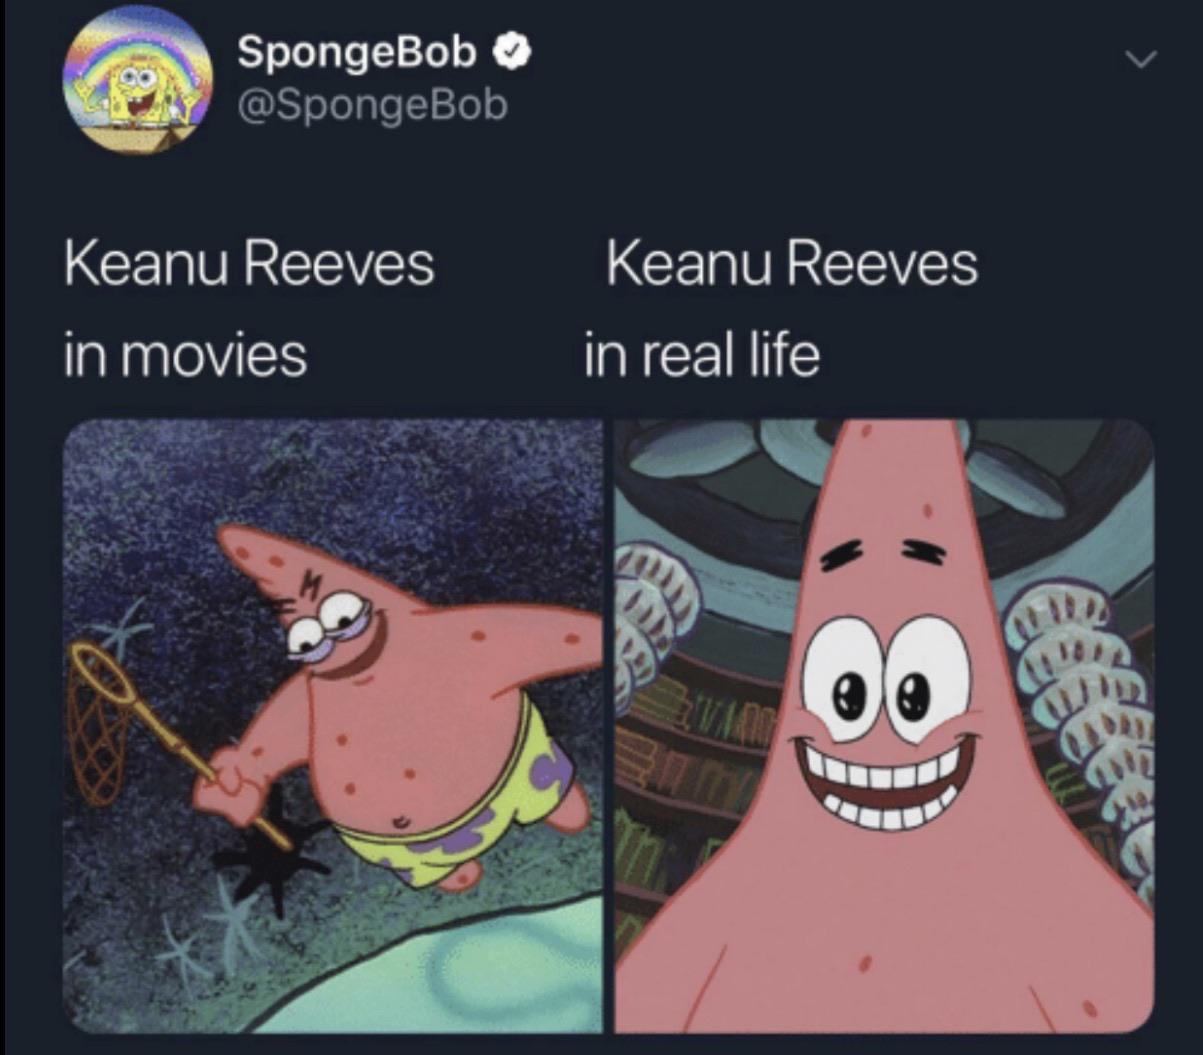 Spongebob Meme, Keanu Reeves, Patrick spongebob-memes spongebob text: SpongeBob @SpongeBob Keanu Reeves in movies Keanu Reeves in real life a, 